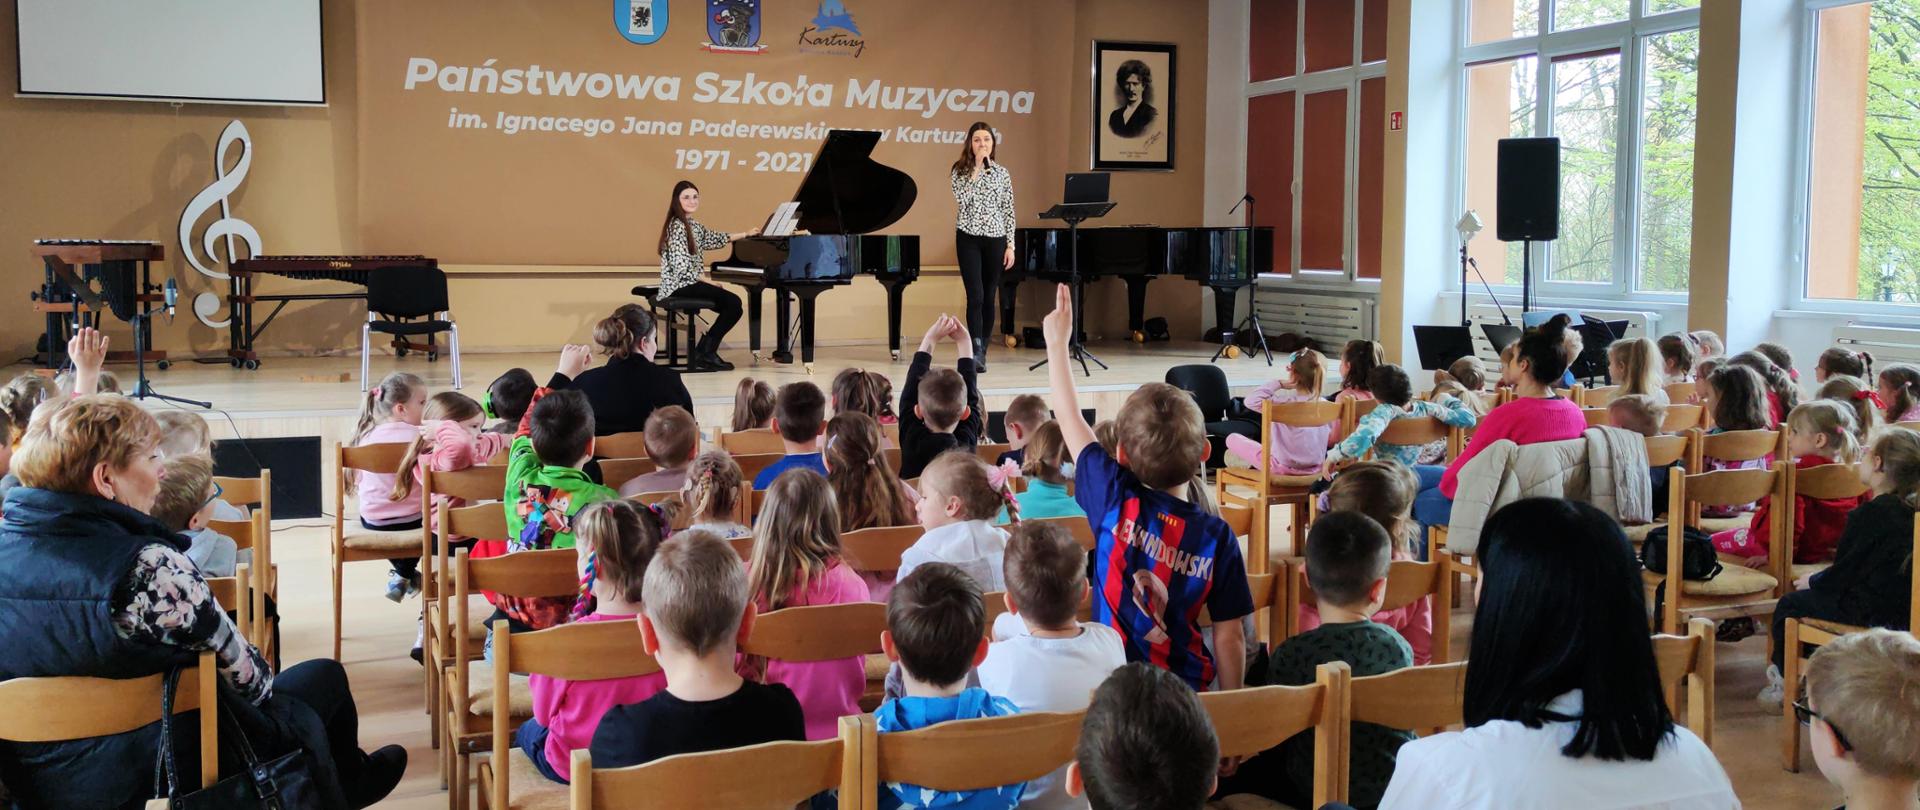 na widowni grupa przedszkolaków, na scenie osoby prowadzące spotkanie przy fortepianie